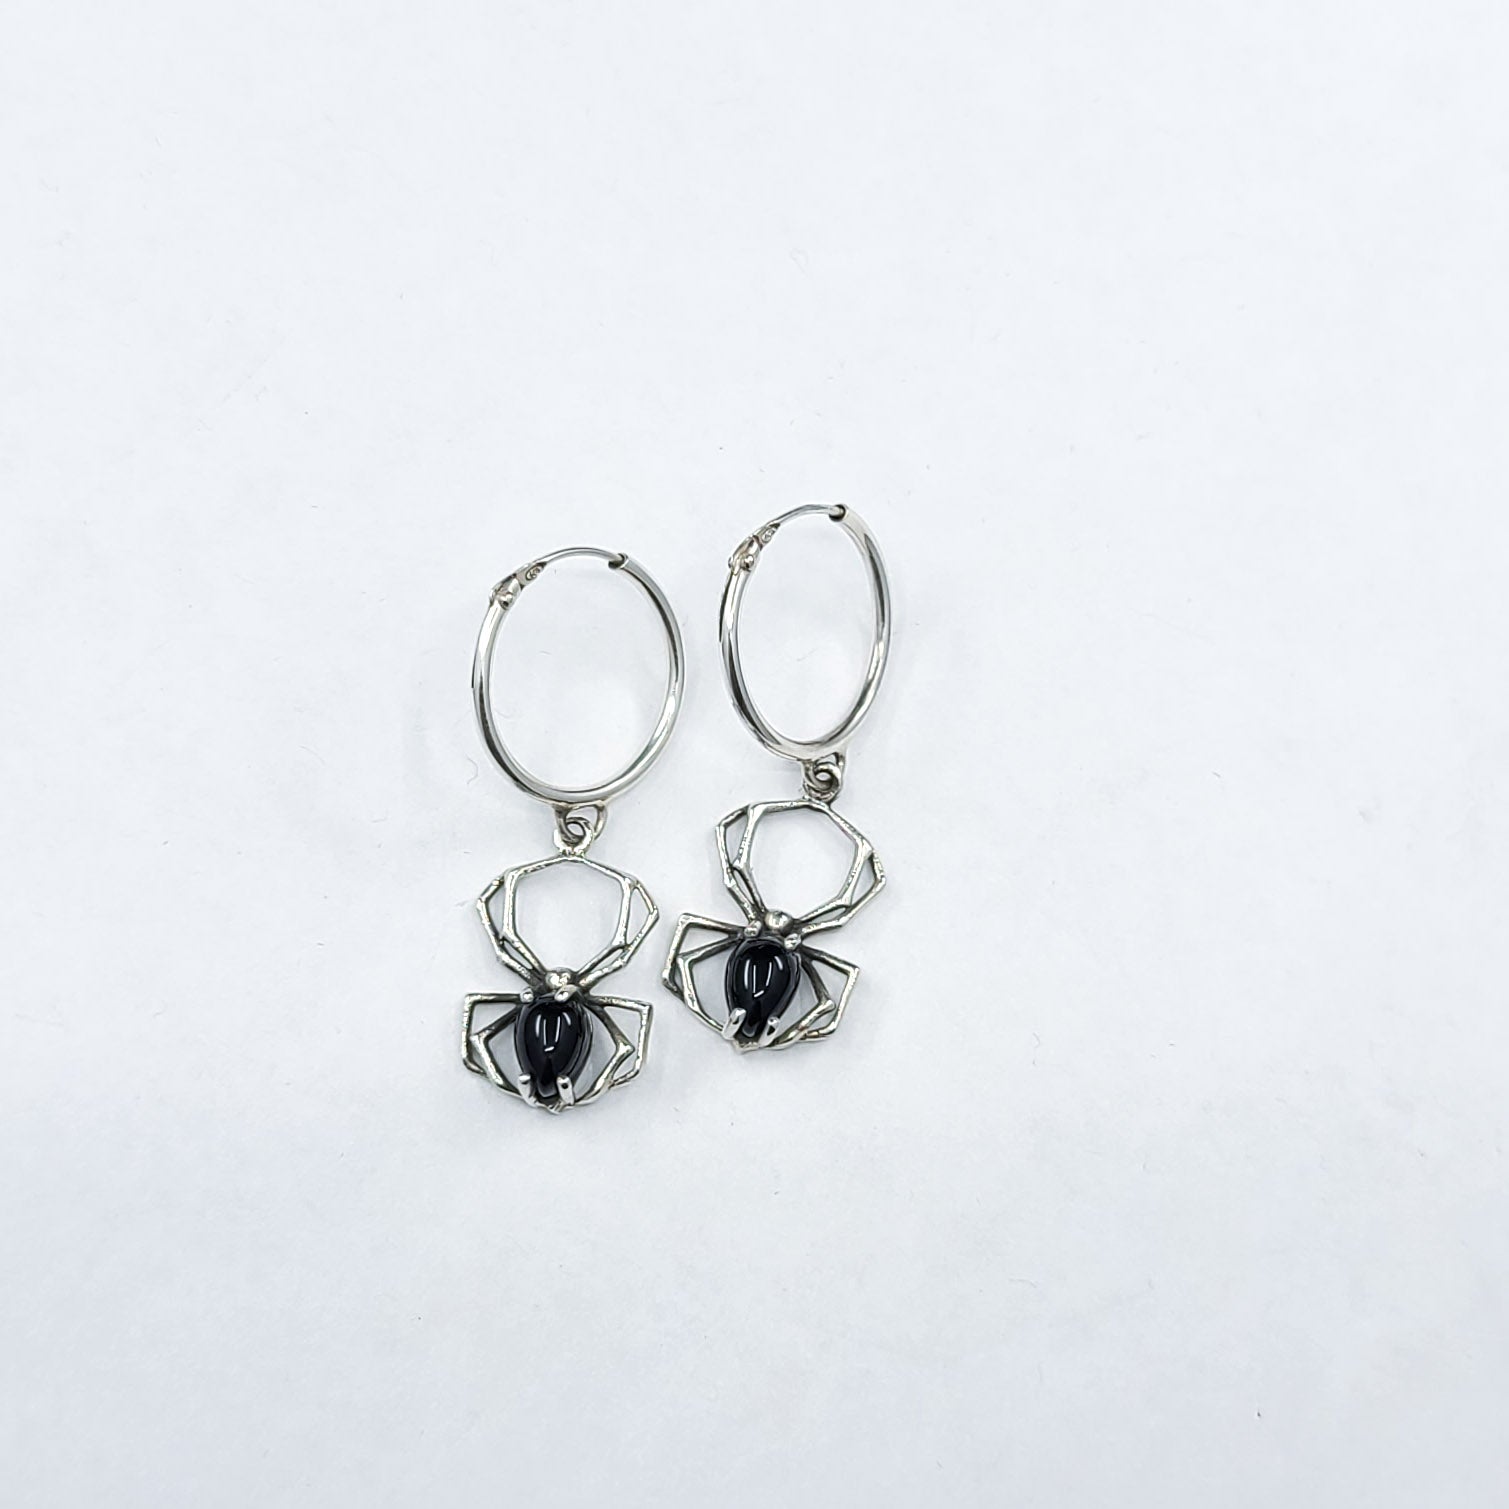 Black Spider Hoops Earrings - Inchoo Bijoux